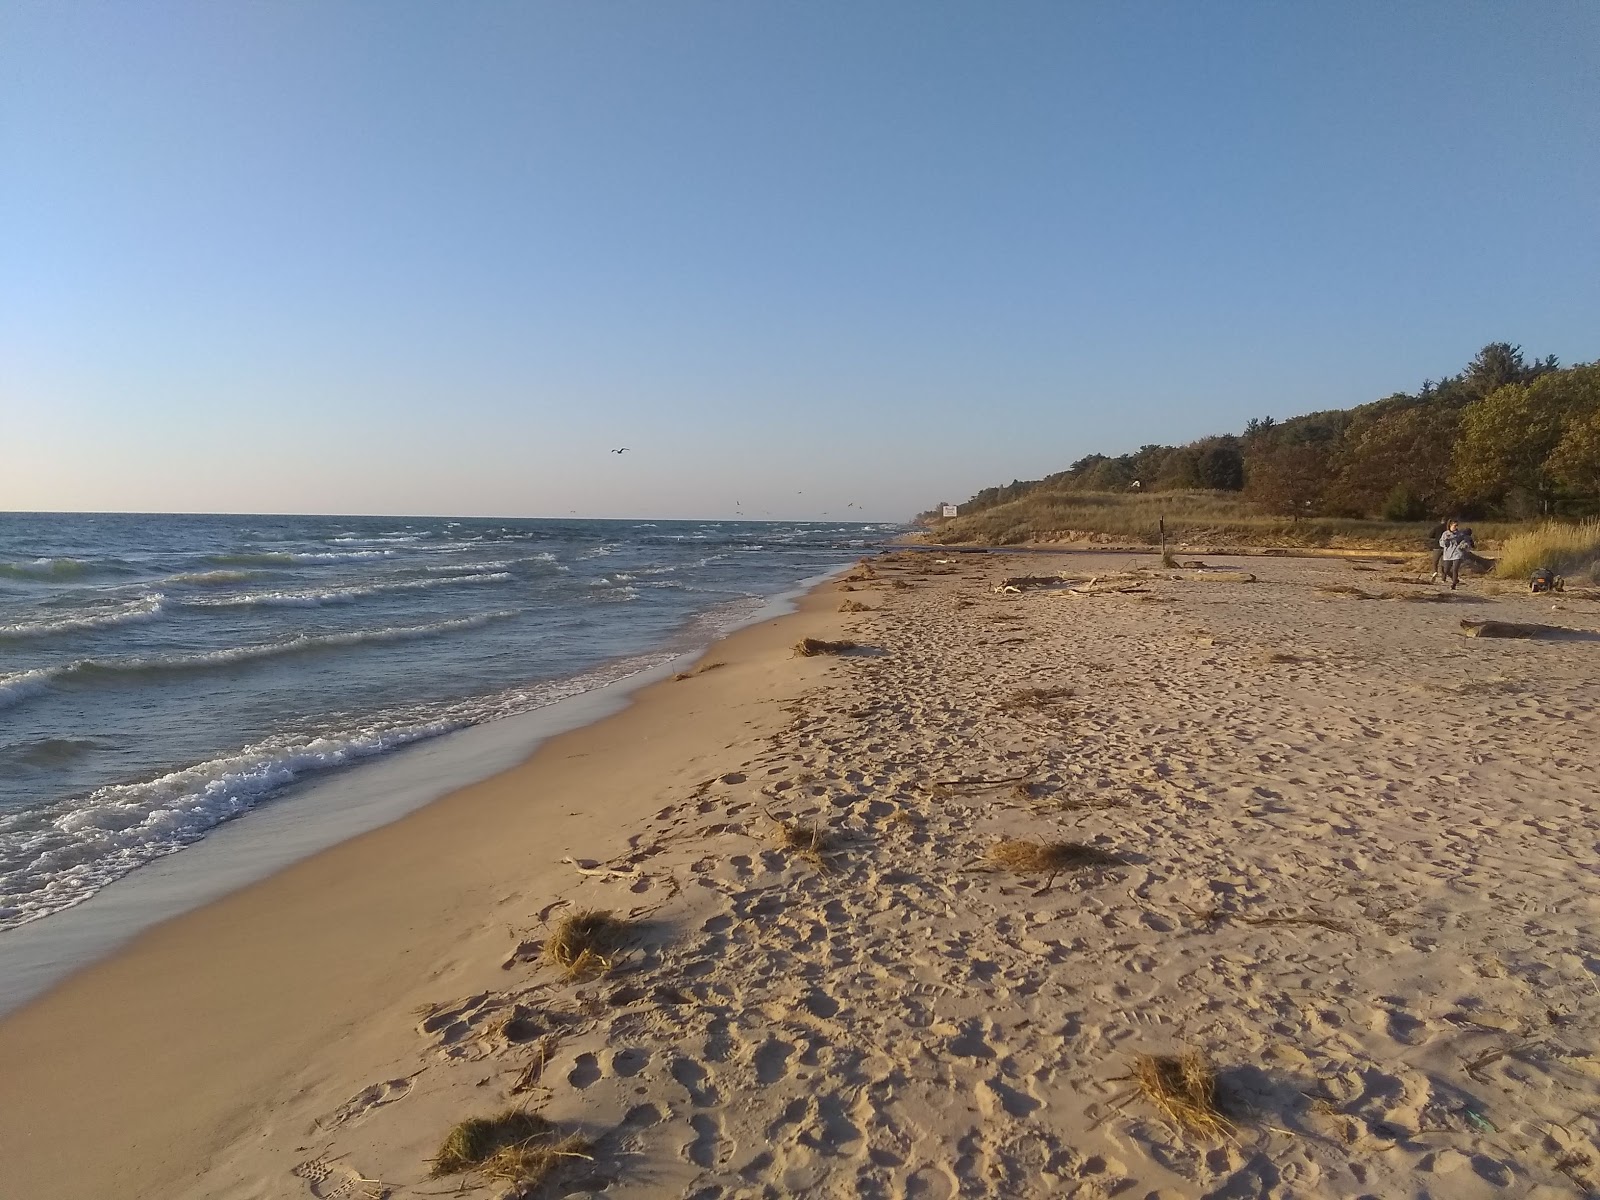 Foto af Benona Township Beach - populært sted blandt afslapningskendere